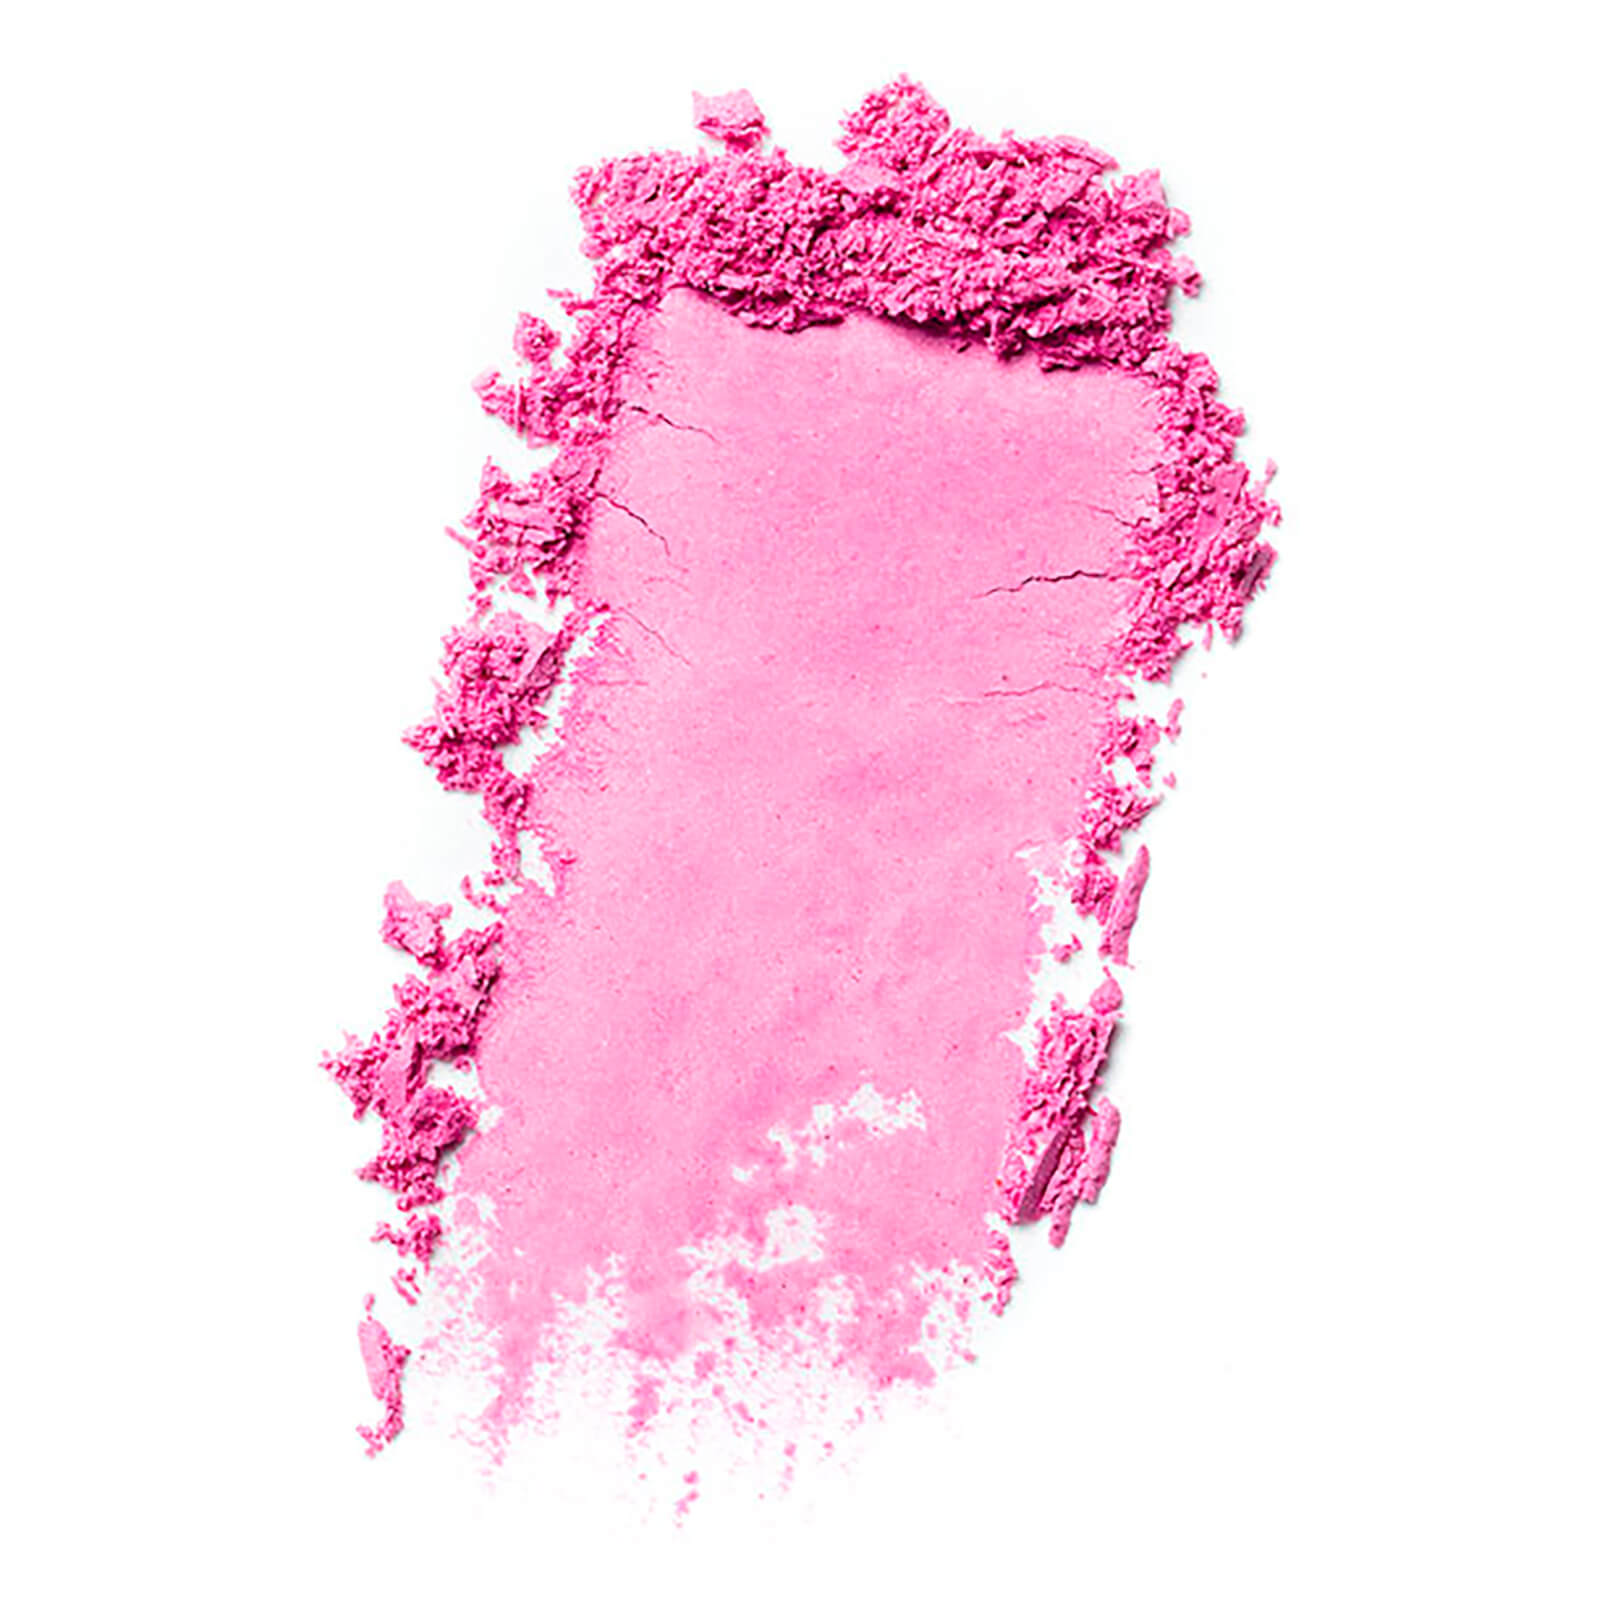 Bobbi Brown Blush (Various Shades) - Pale Pink